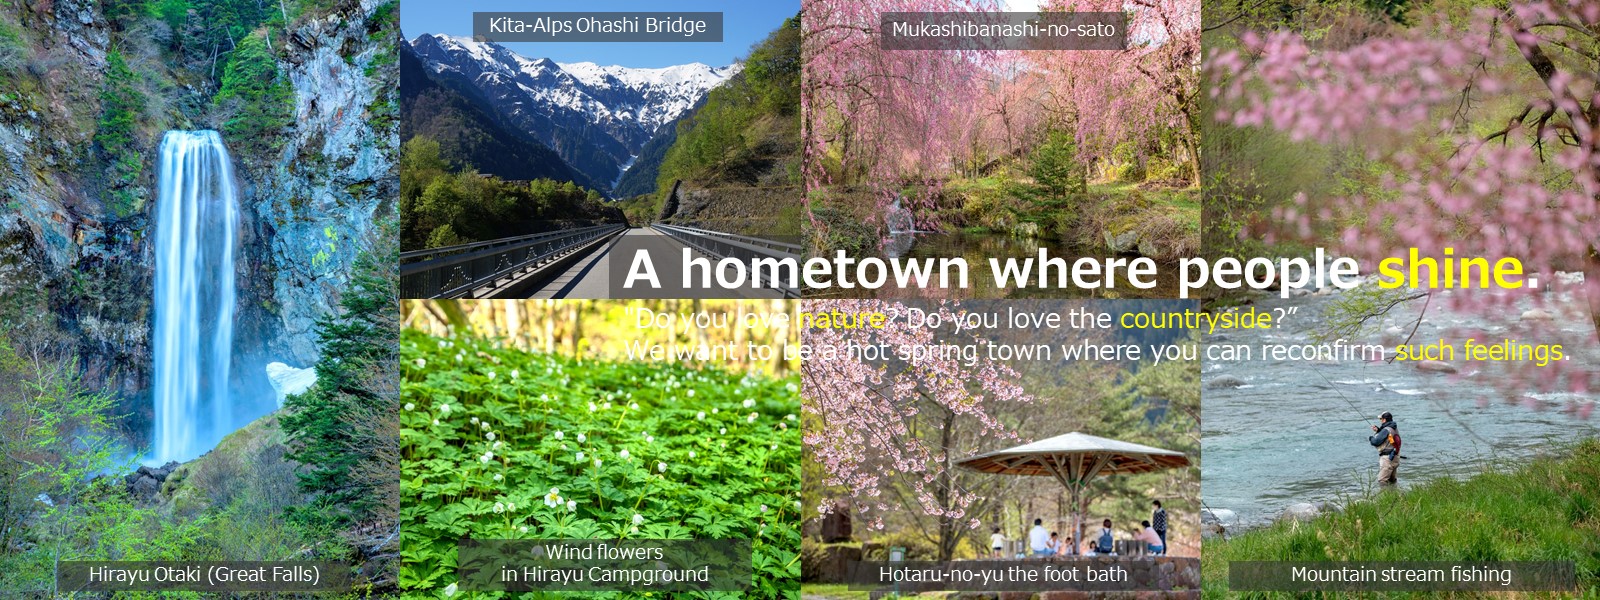 Okuhida-onsengo | Okuhida Bear's Park, Sugoroku Keikoku Valley, Kita-alps Ohashi Bridge, Rental Bike Service, Hirayu Minzokukan (Museum)